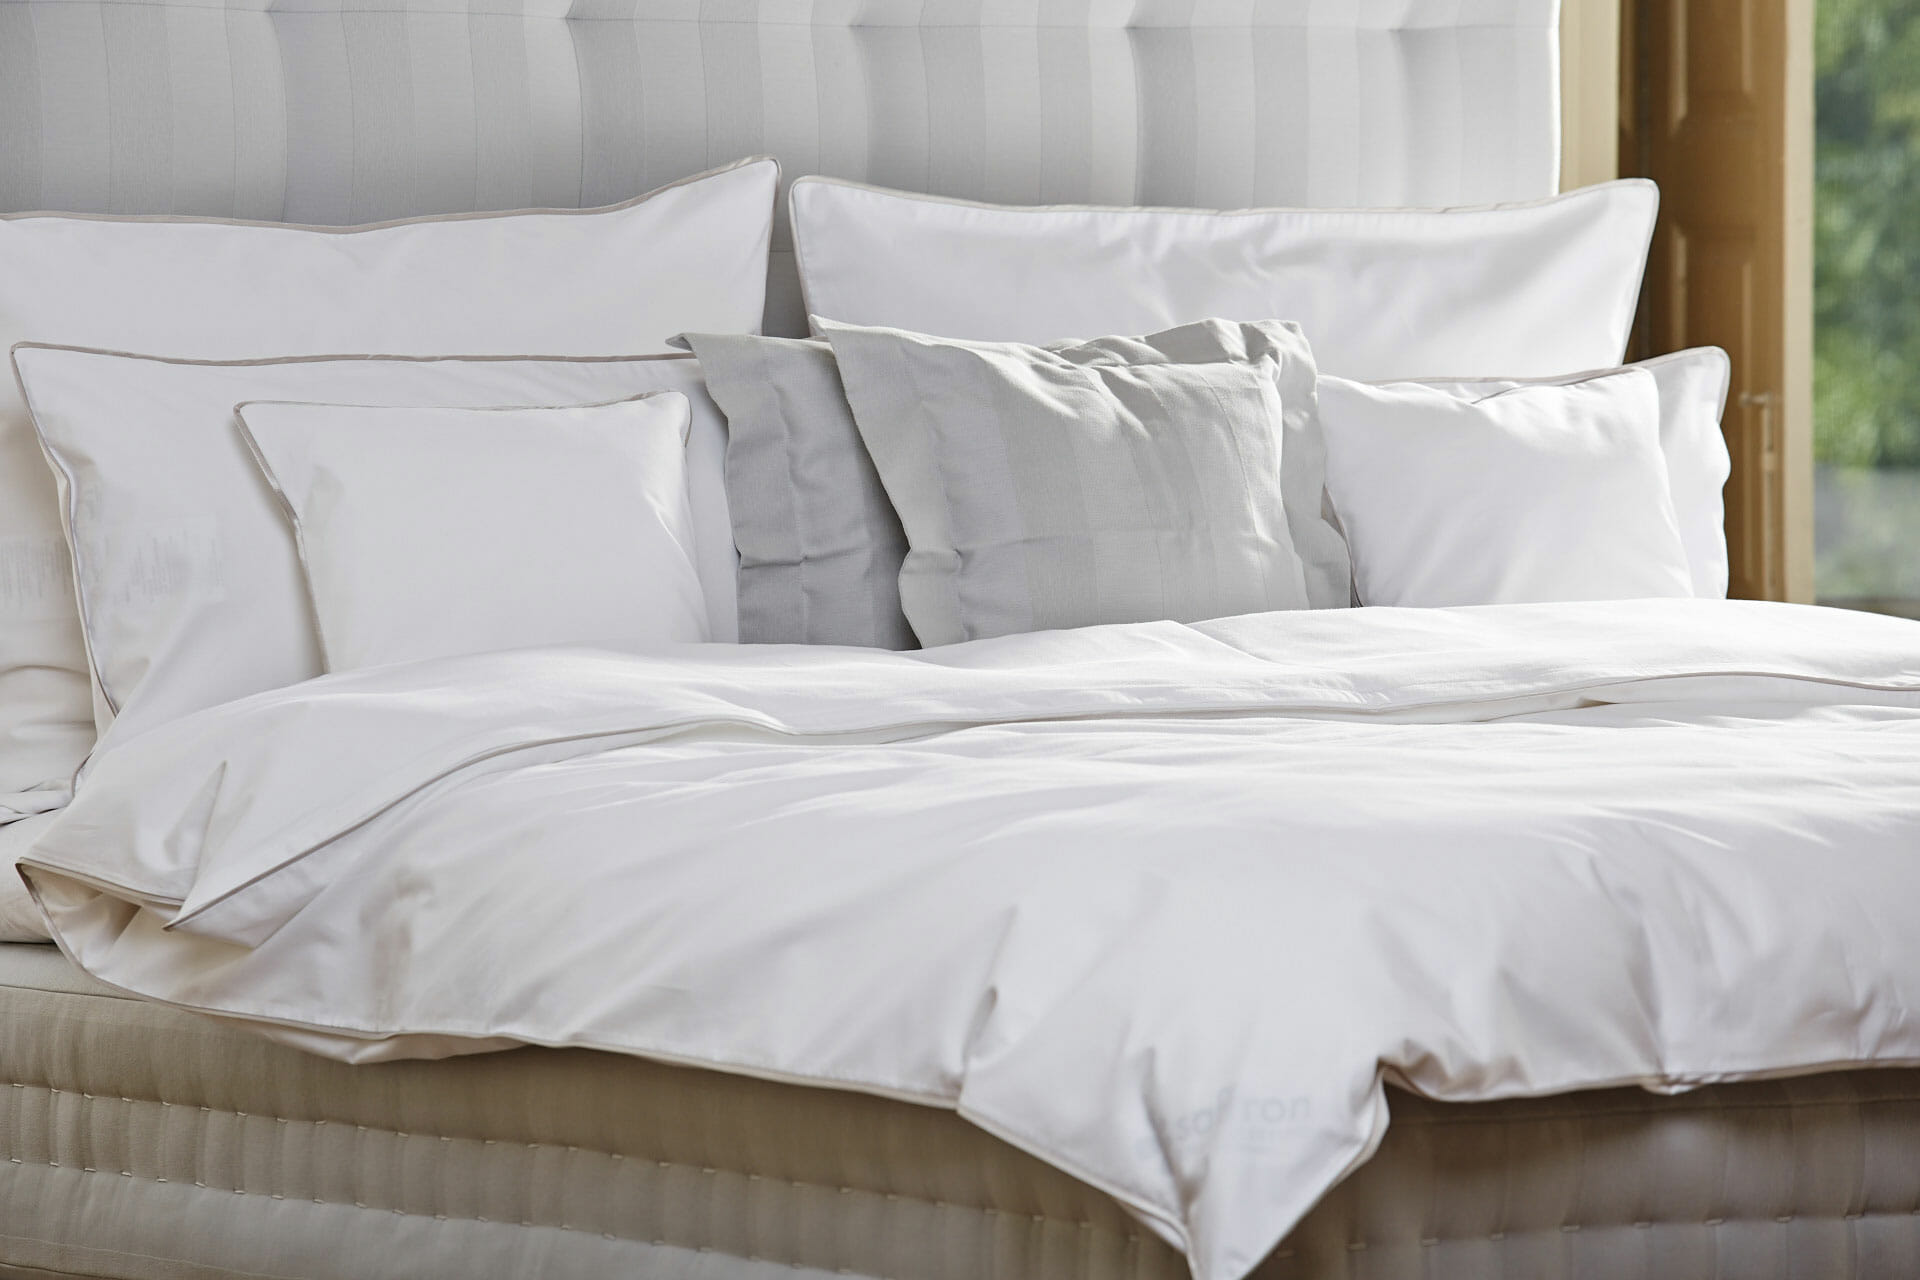 Saffron beds - Duvets and pillows